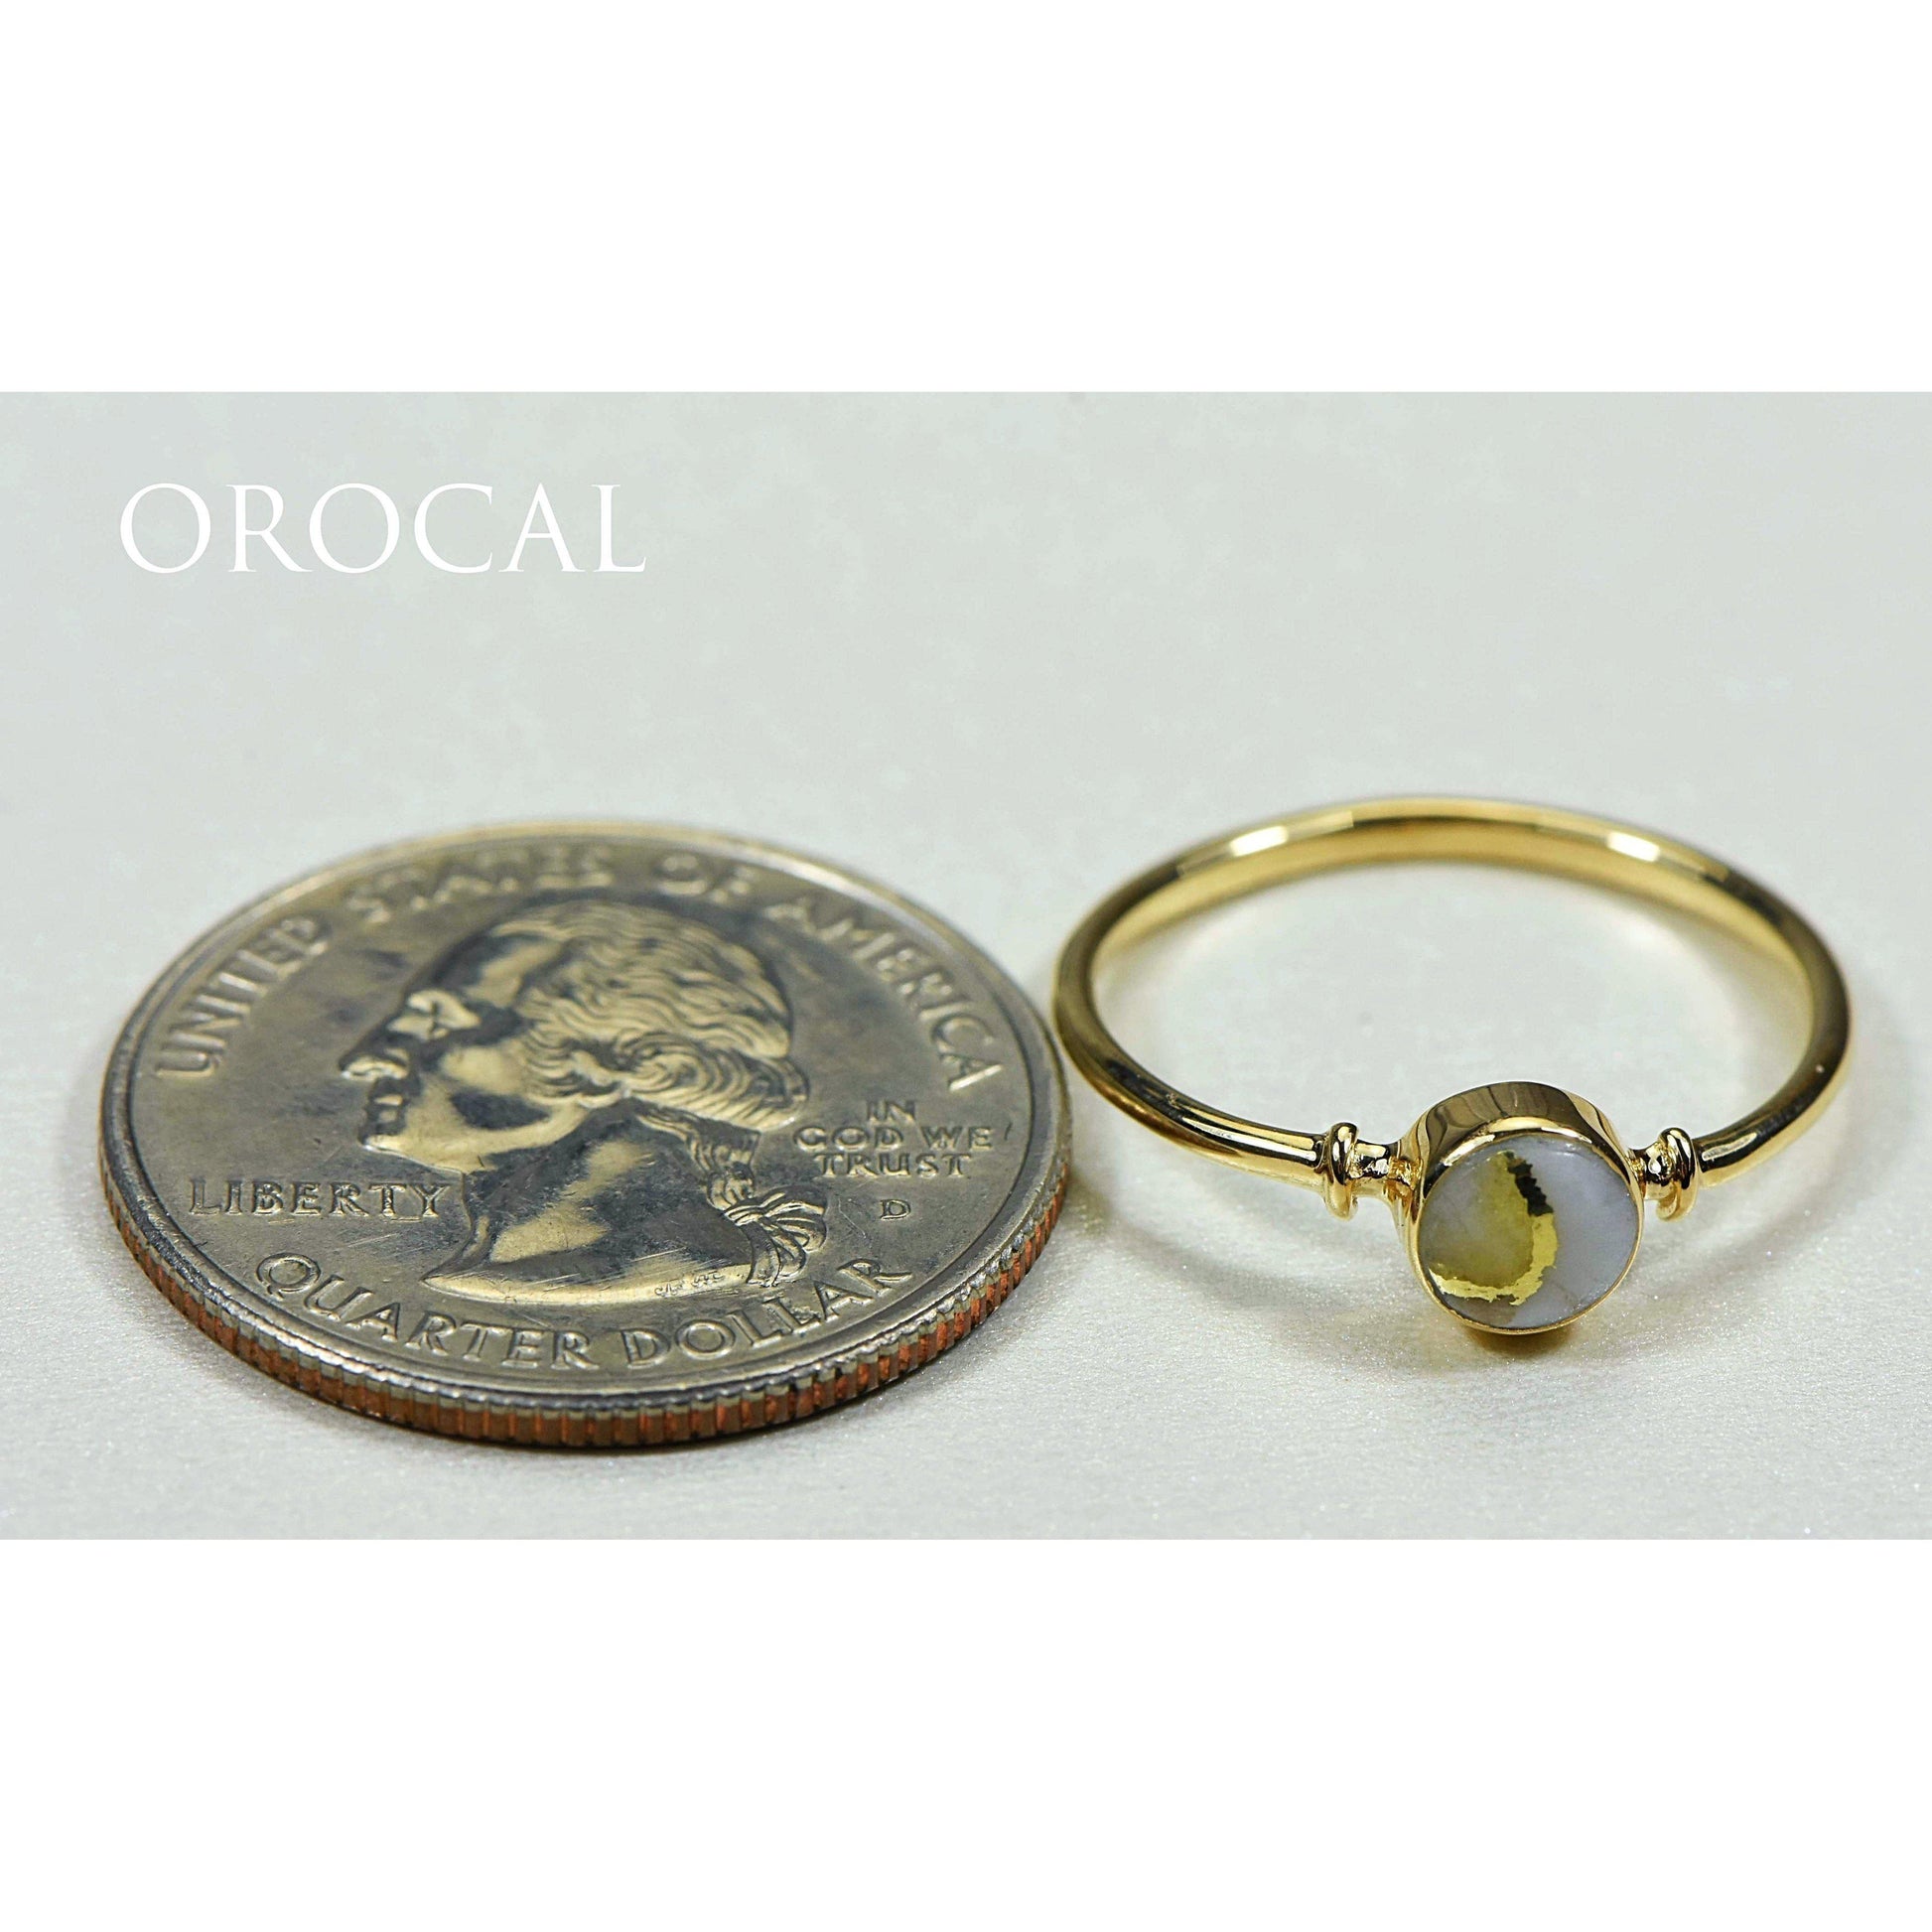 Orocal Gold Quartz Ladies Ring RL680Q-Destination Gold Detectors